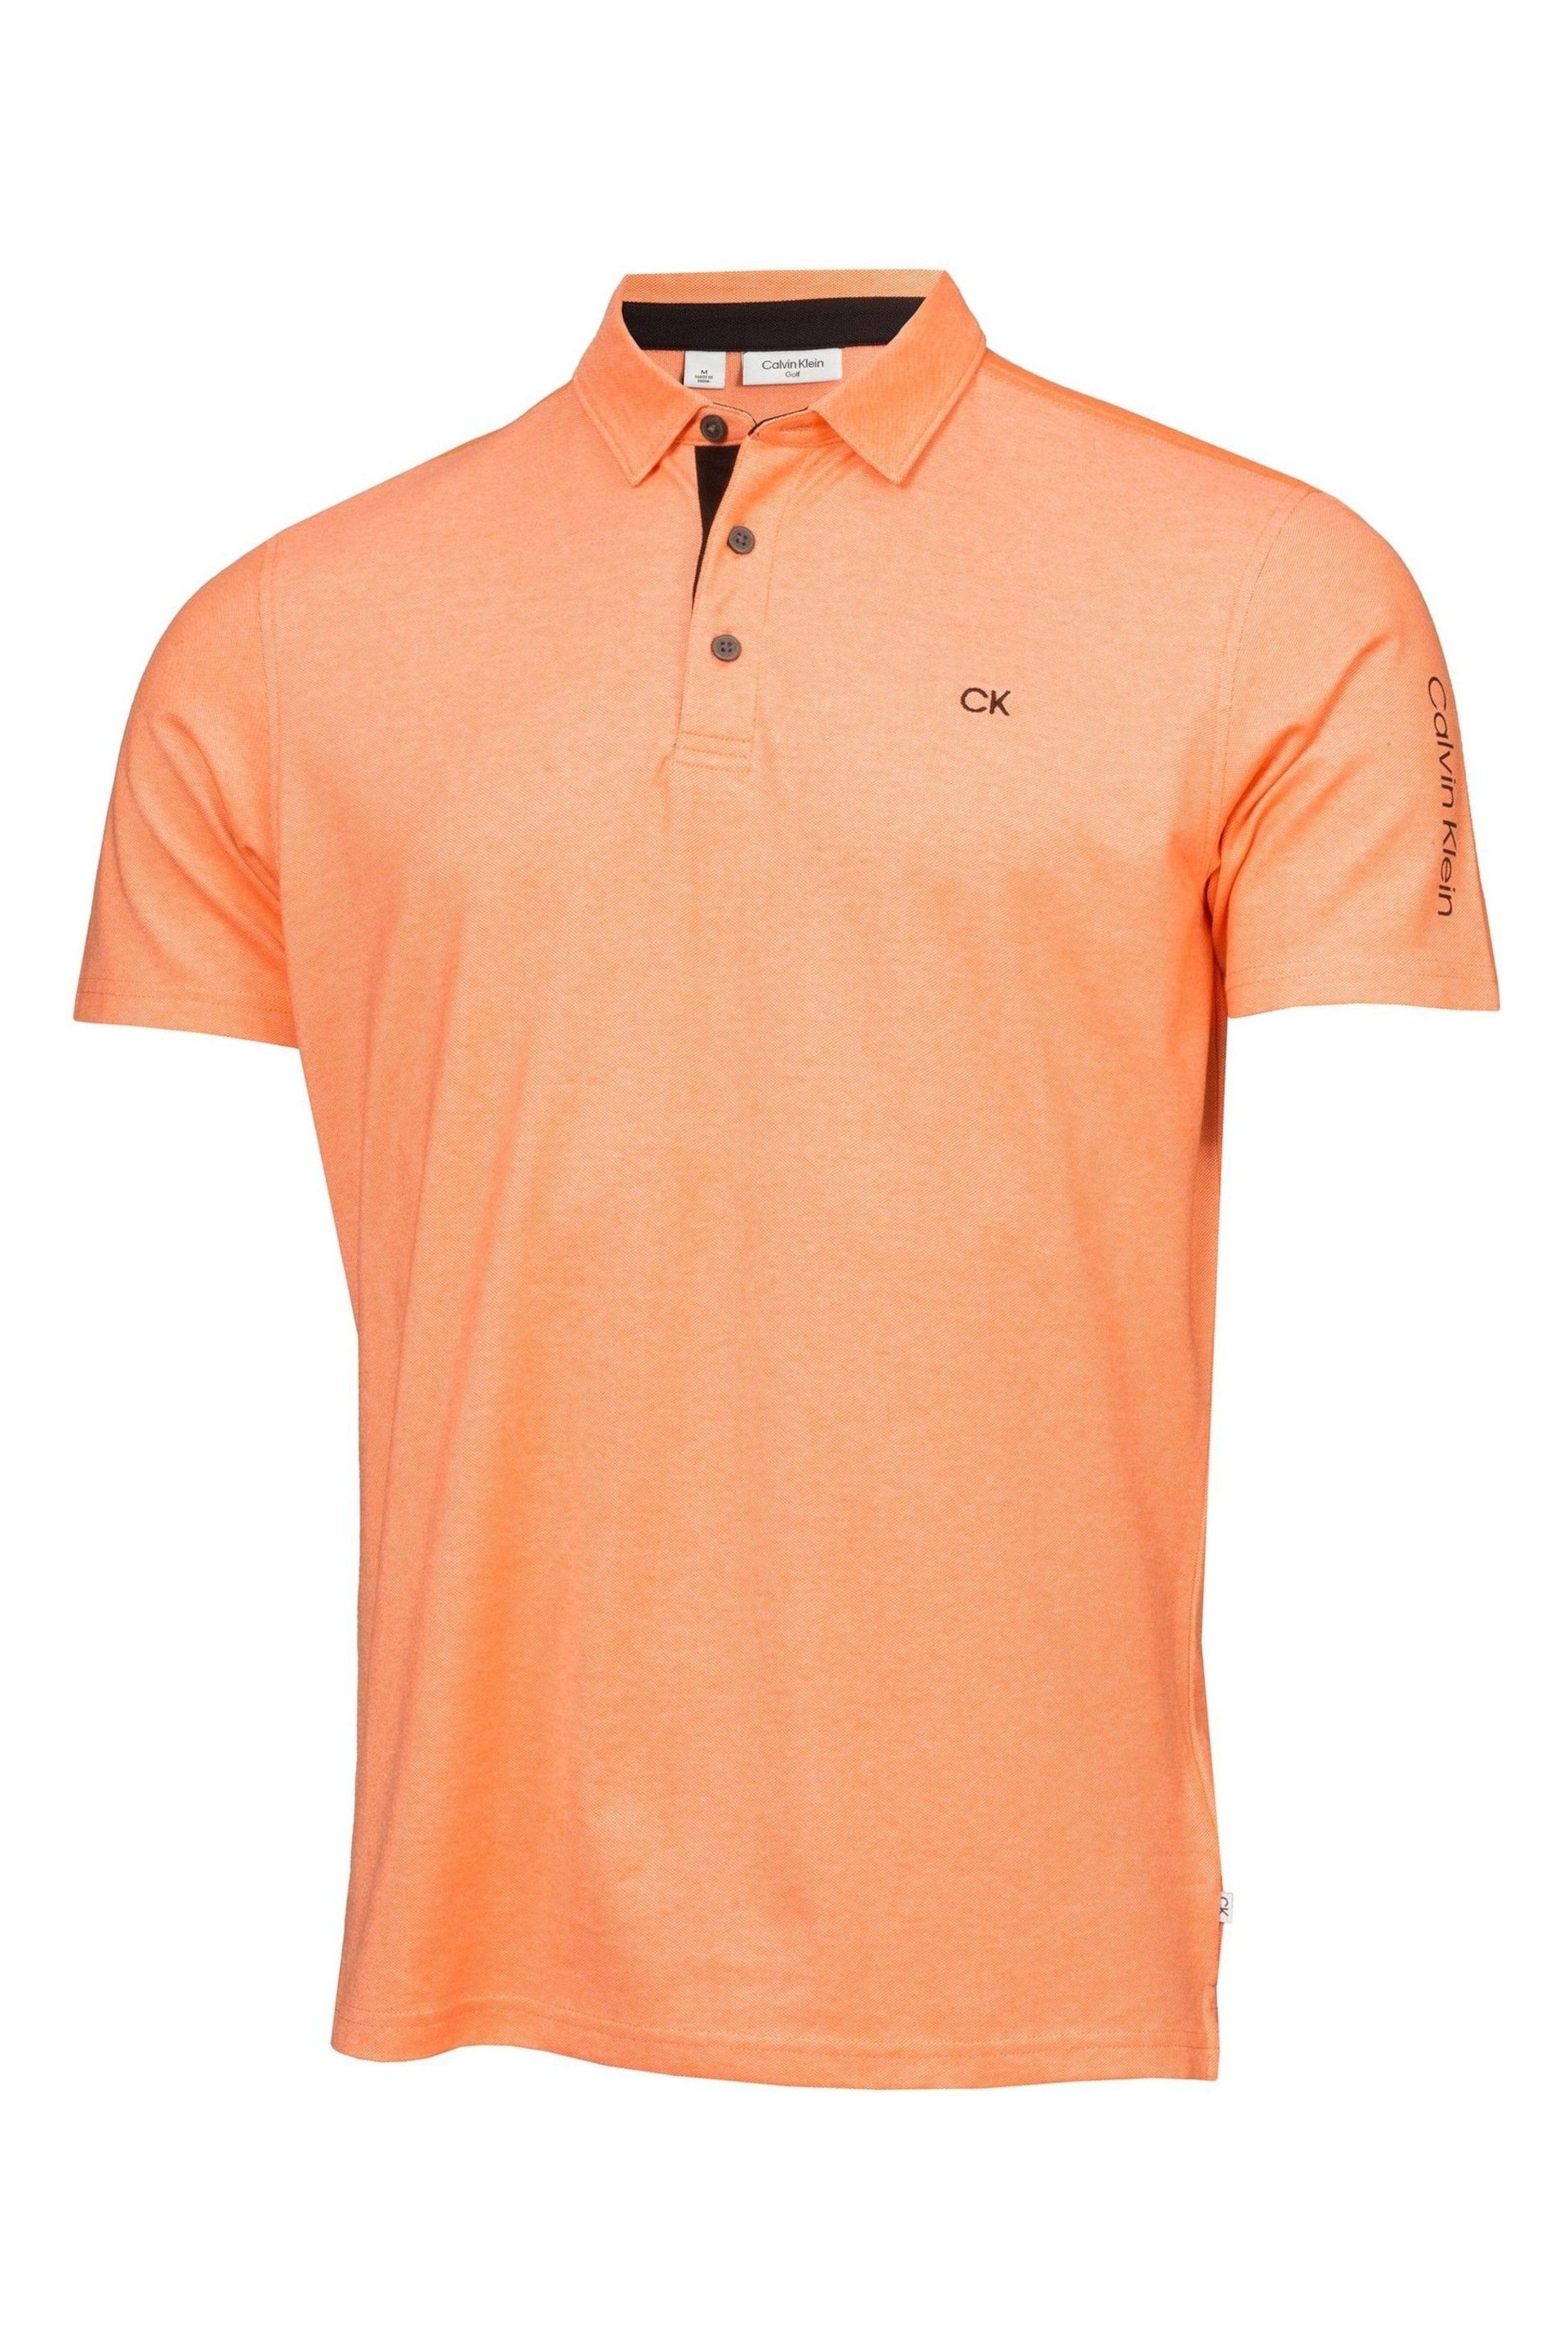 Calvin Klein Orange Golf Uni Polo Shirt - Image 5 of 9